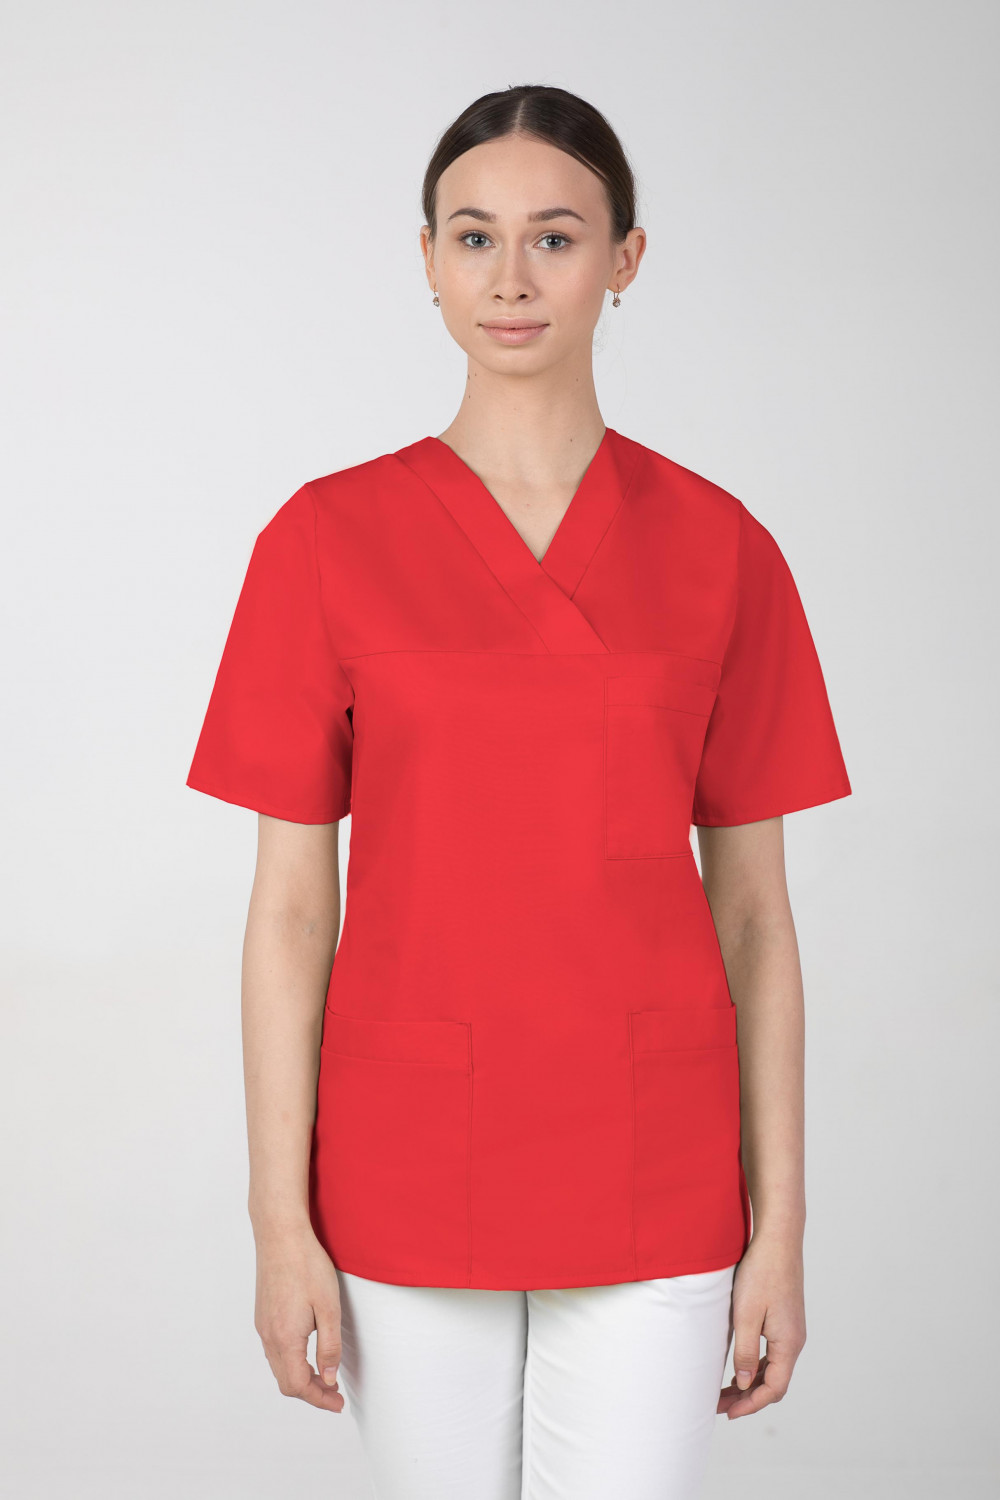 M-074 Bluza damska medyczna fartuch  kolor czerwony